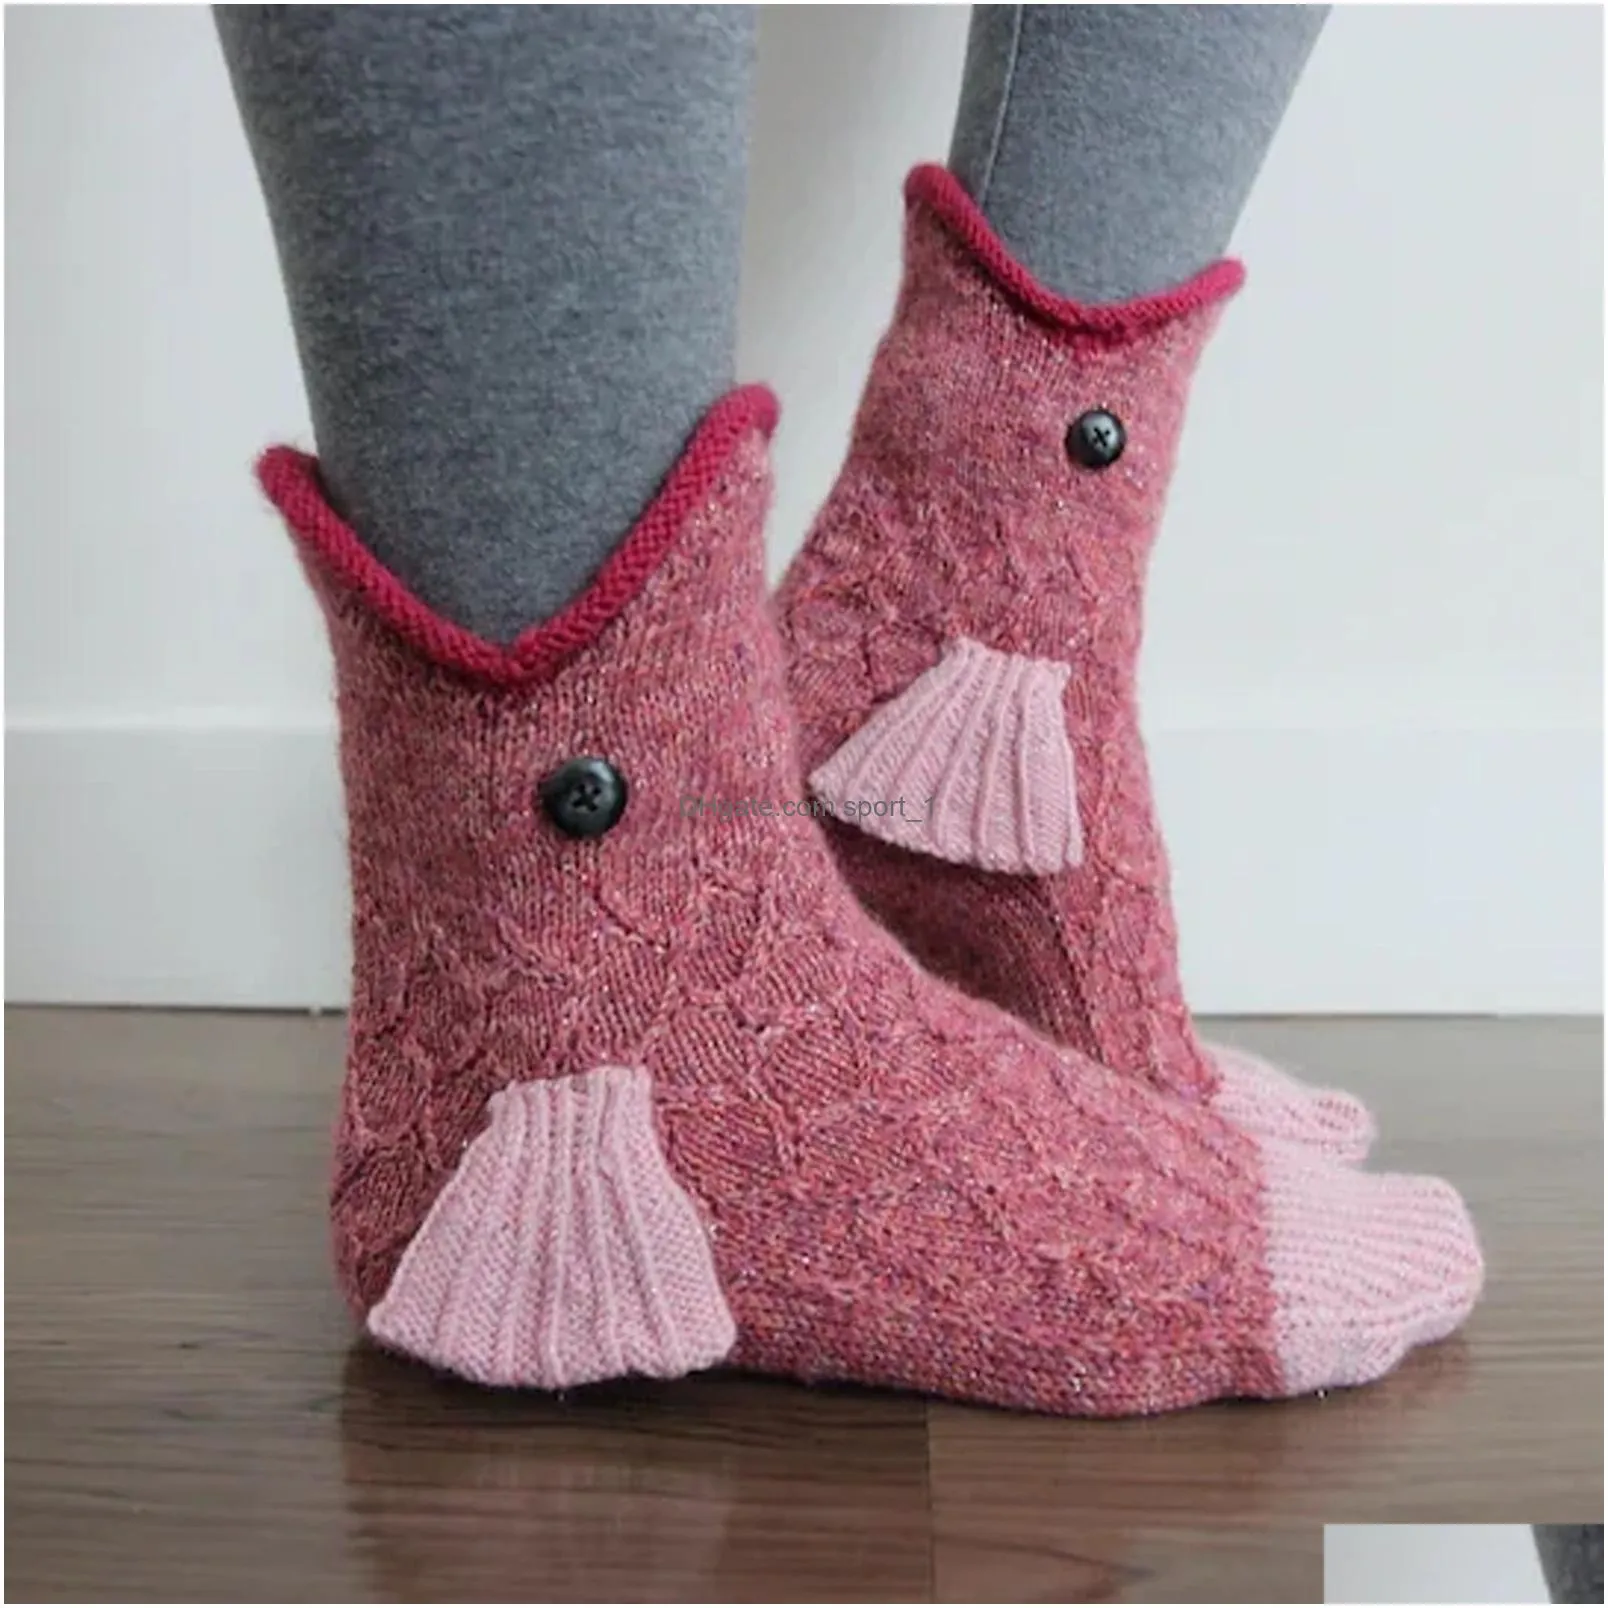  christmas socks shark fish chameleon clogodile knitted socks cute novelty unisex winter warm floor sock men women xmas gift